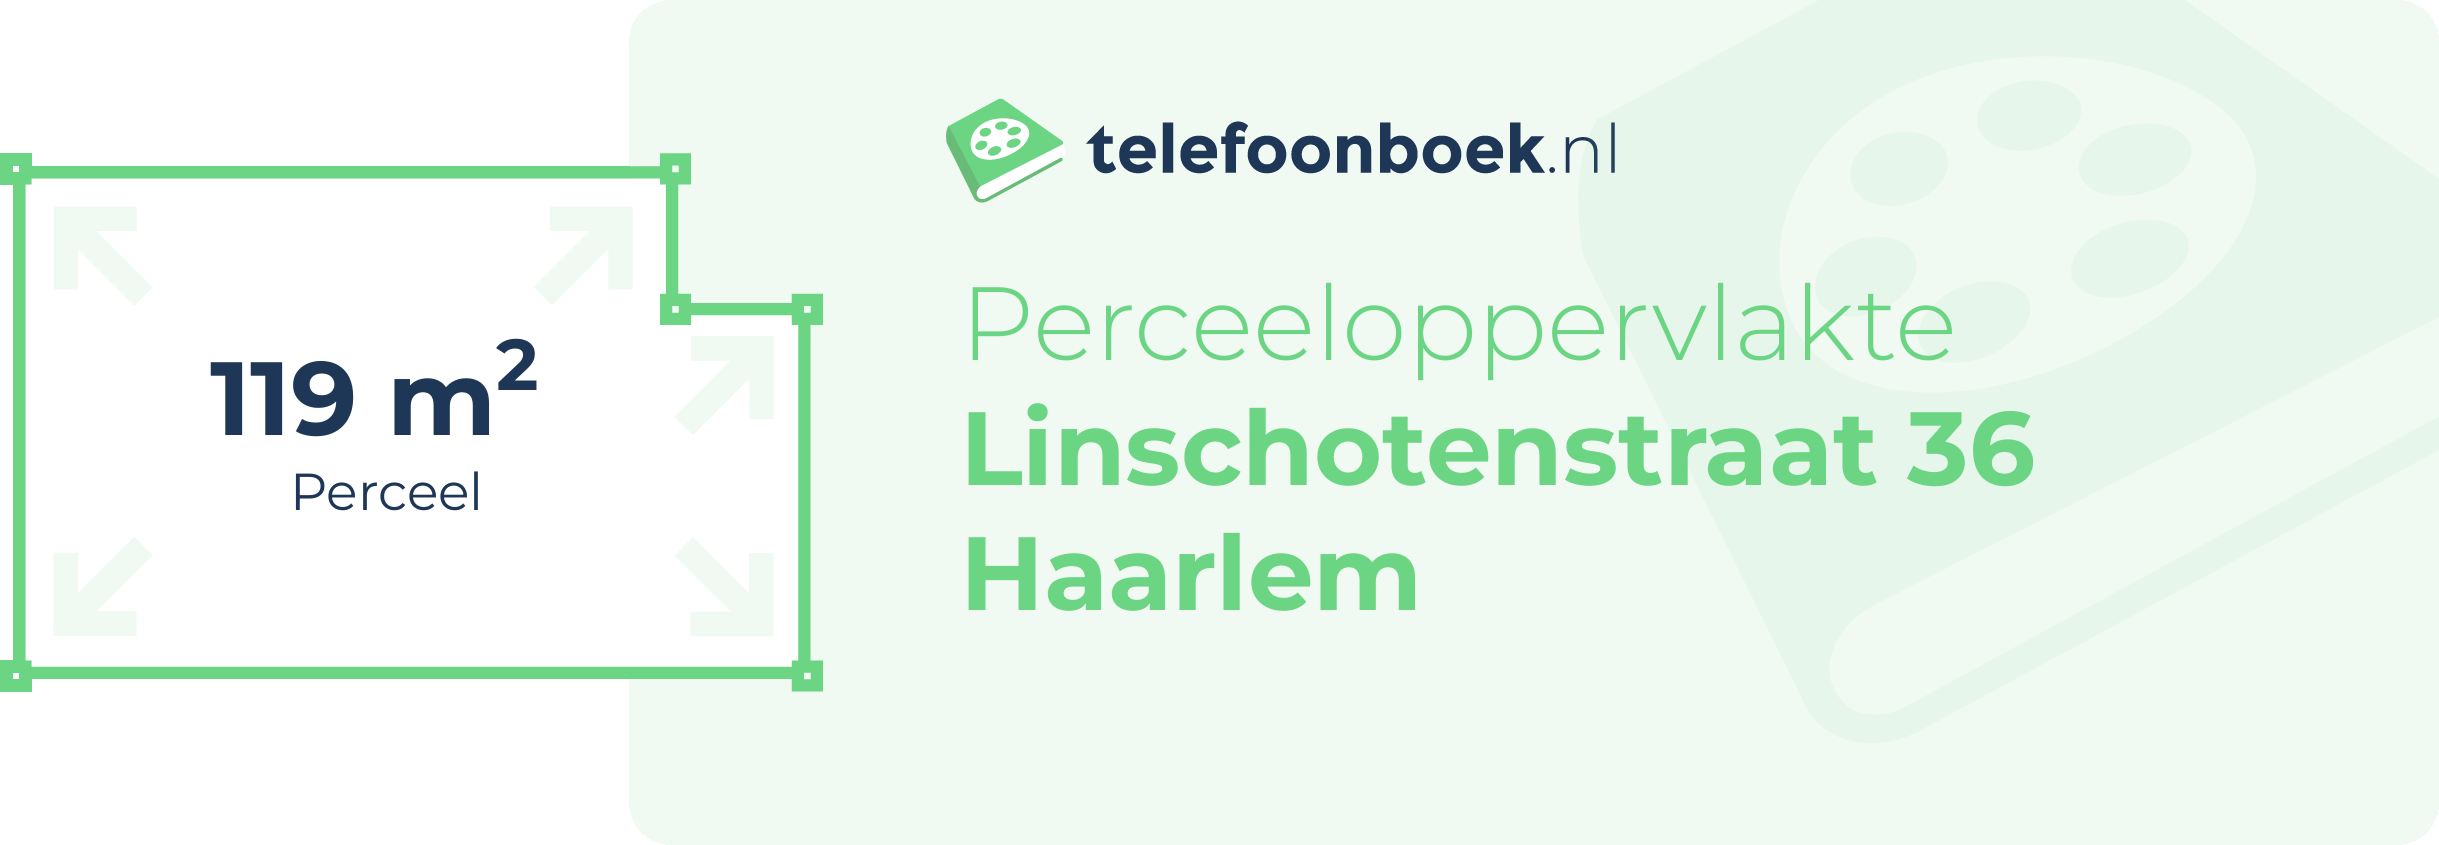 Perceeloppervlakte Linschotenstraat 36 Haarlem